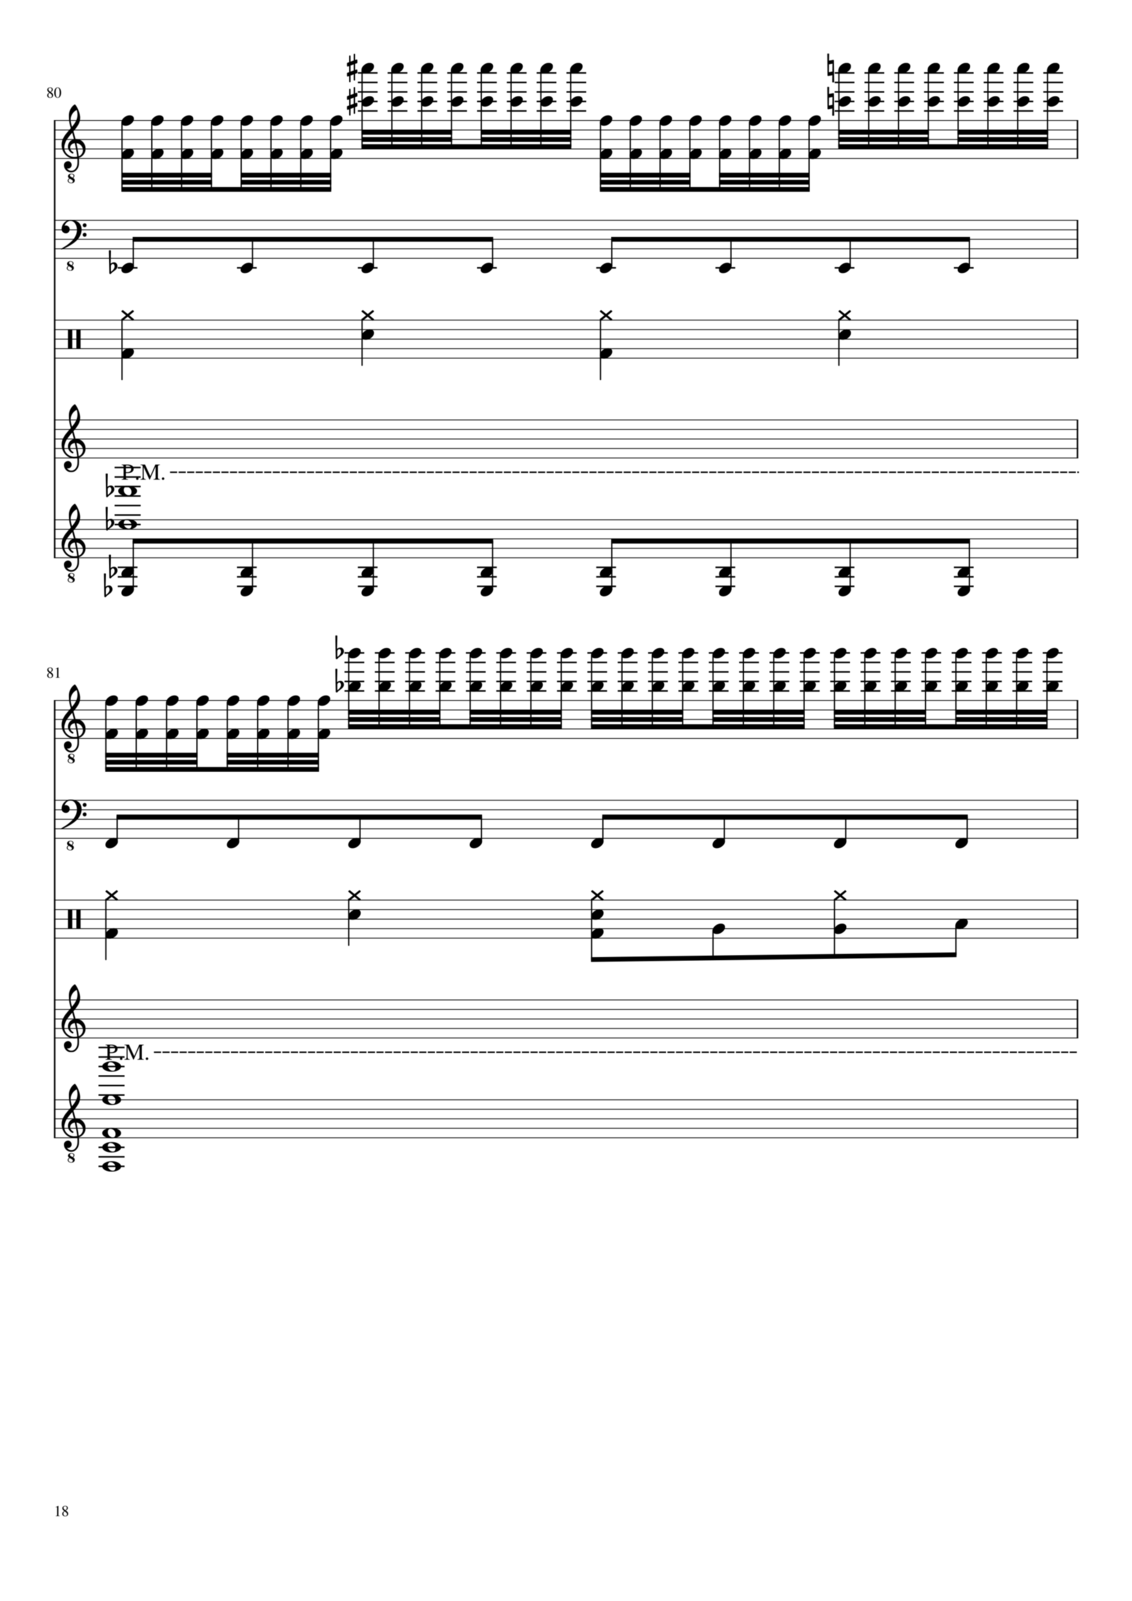 Vechnaya prizrachnaya vstrechnaya slide, Image 18